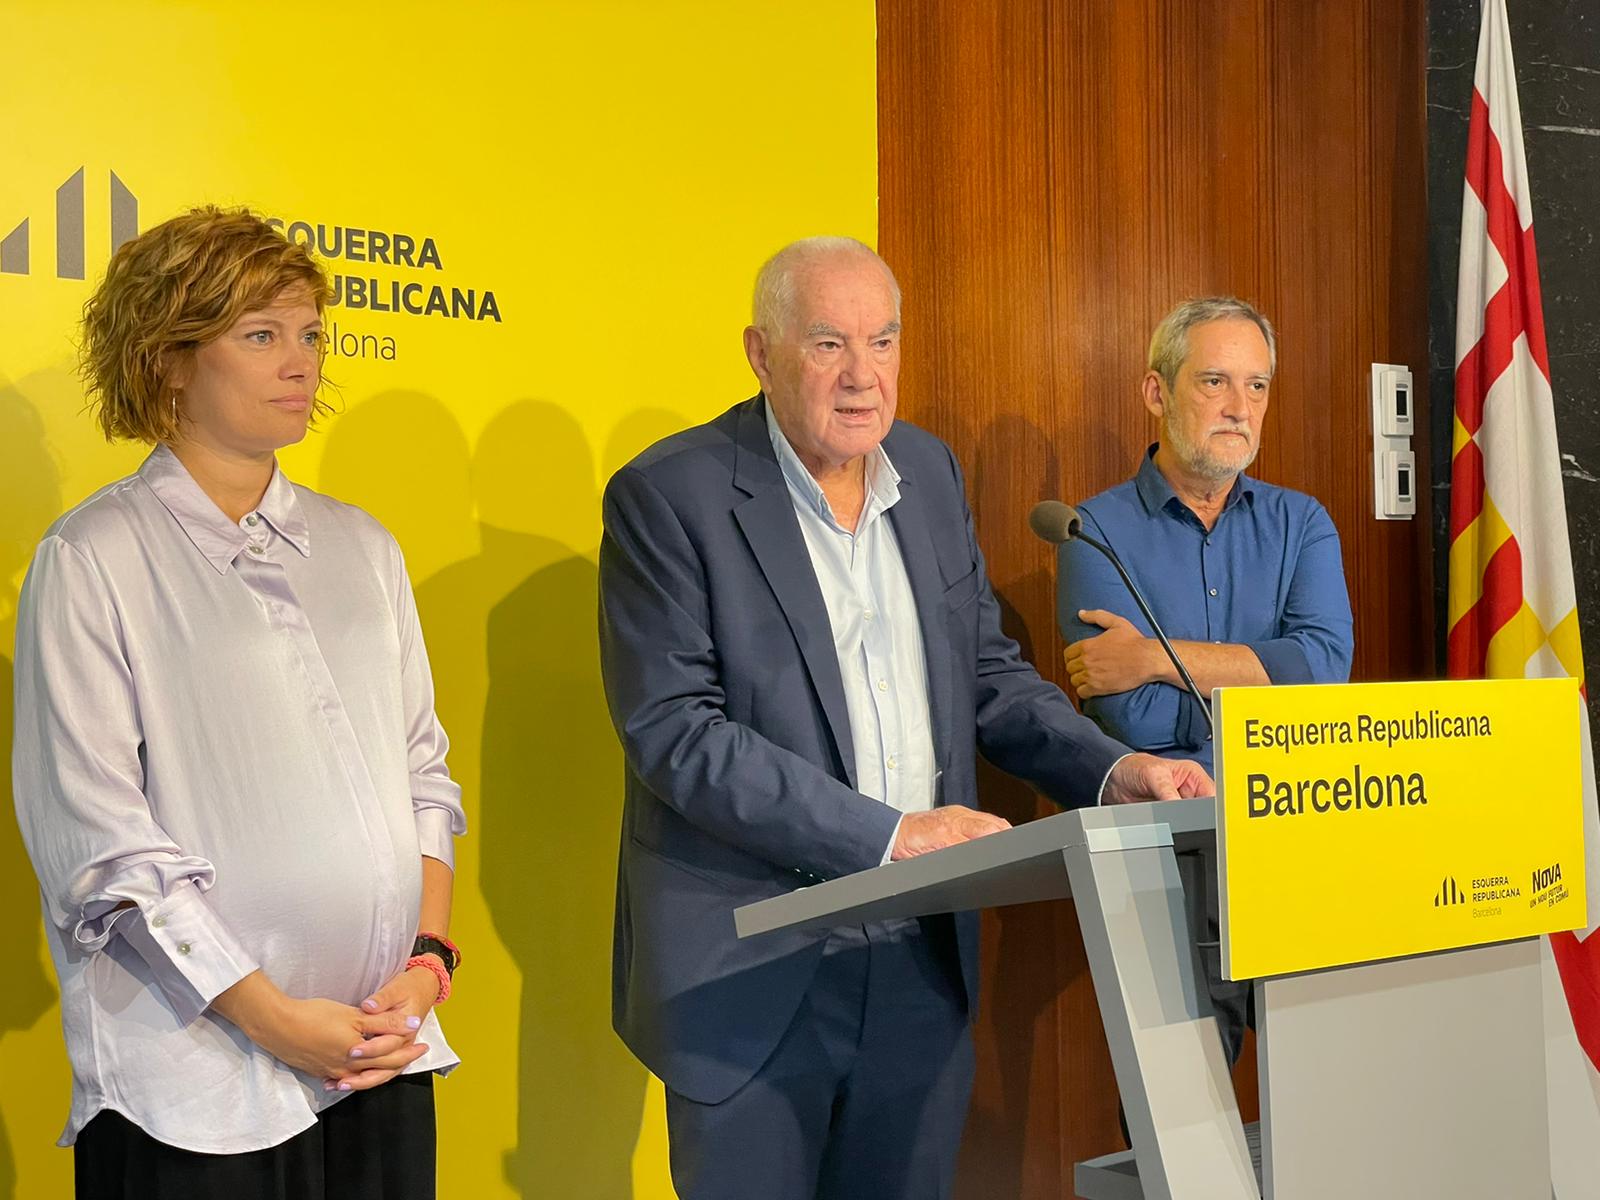 Ernest Maragall arranca el curso político y la carrera electoral: "ERC somos el cambio"